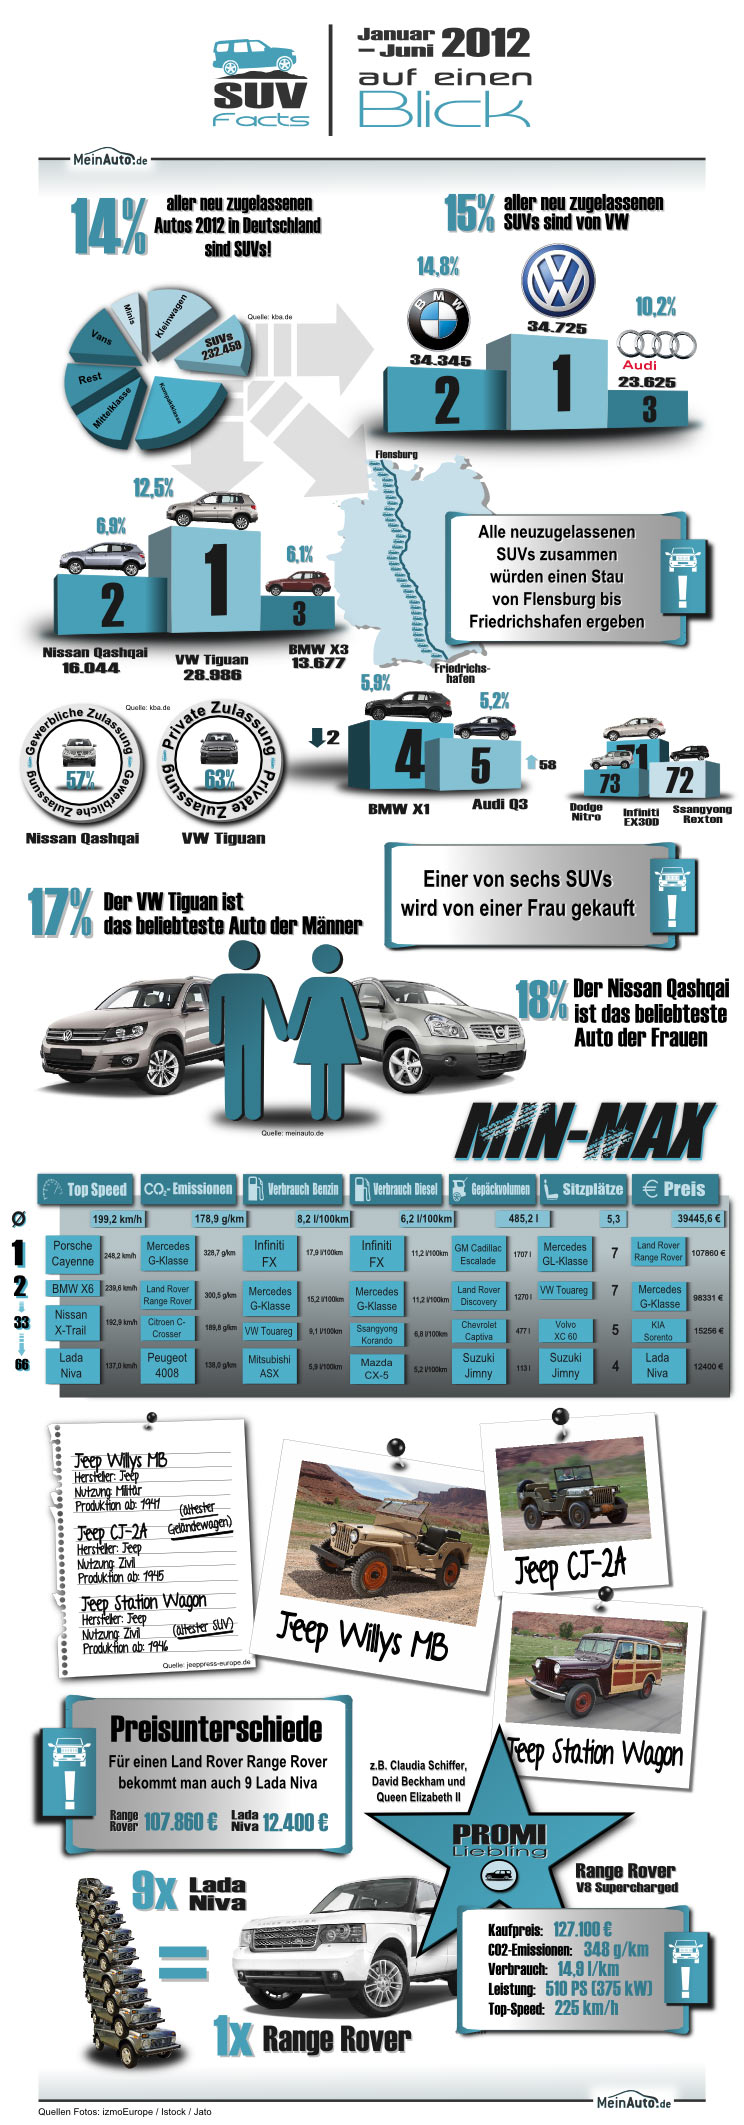 Informationen rund um SUV-Modelle